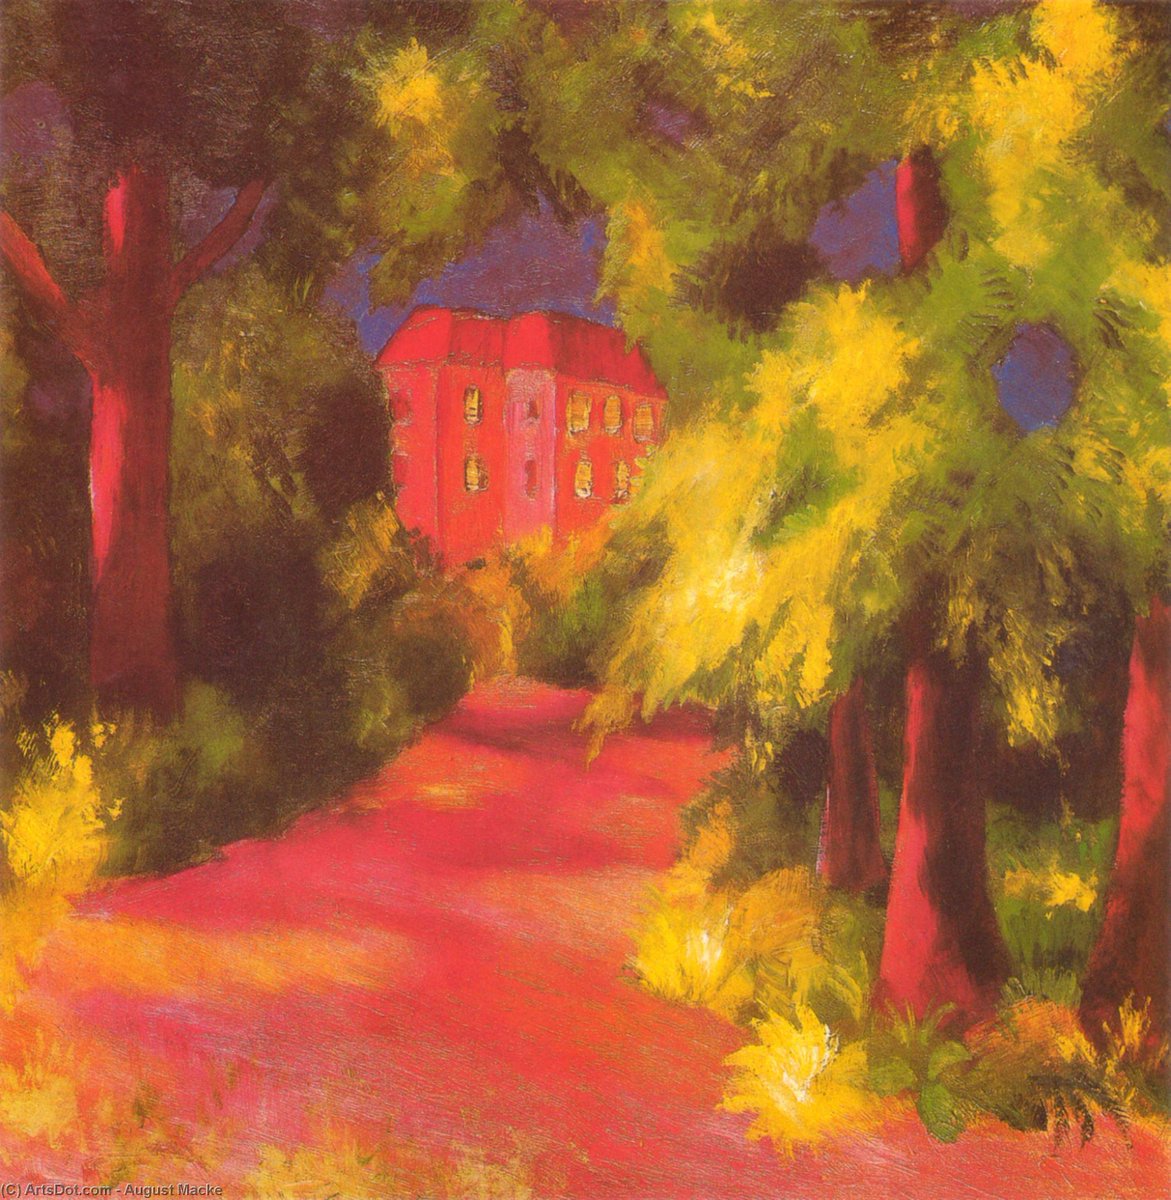 #DonneInArte #BellezzaVersusVirus    #art #Artlovers @pasqualetotaro @alecoscino 

A. MACHE🇩🇪 ' Red house in a Park' 1914 

“Io so che se l’odore fosse visibile, come lo è il colore, vedrei un giardino d’estate nelle nubi dell’arcobaleno.”
ROBERT BRIDGE

#StayAtHomeAndStaySafe